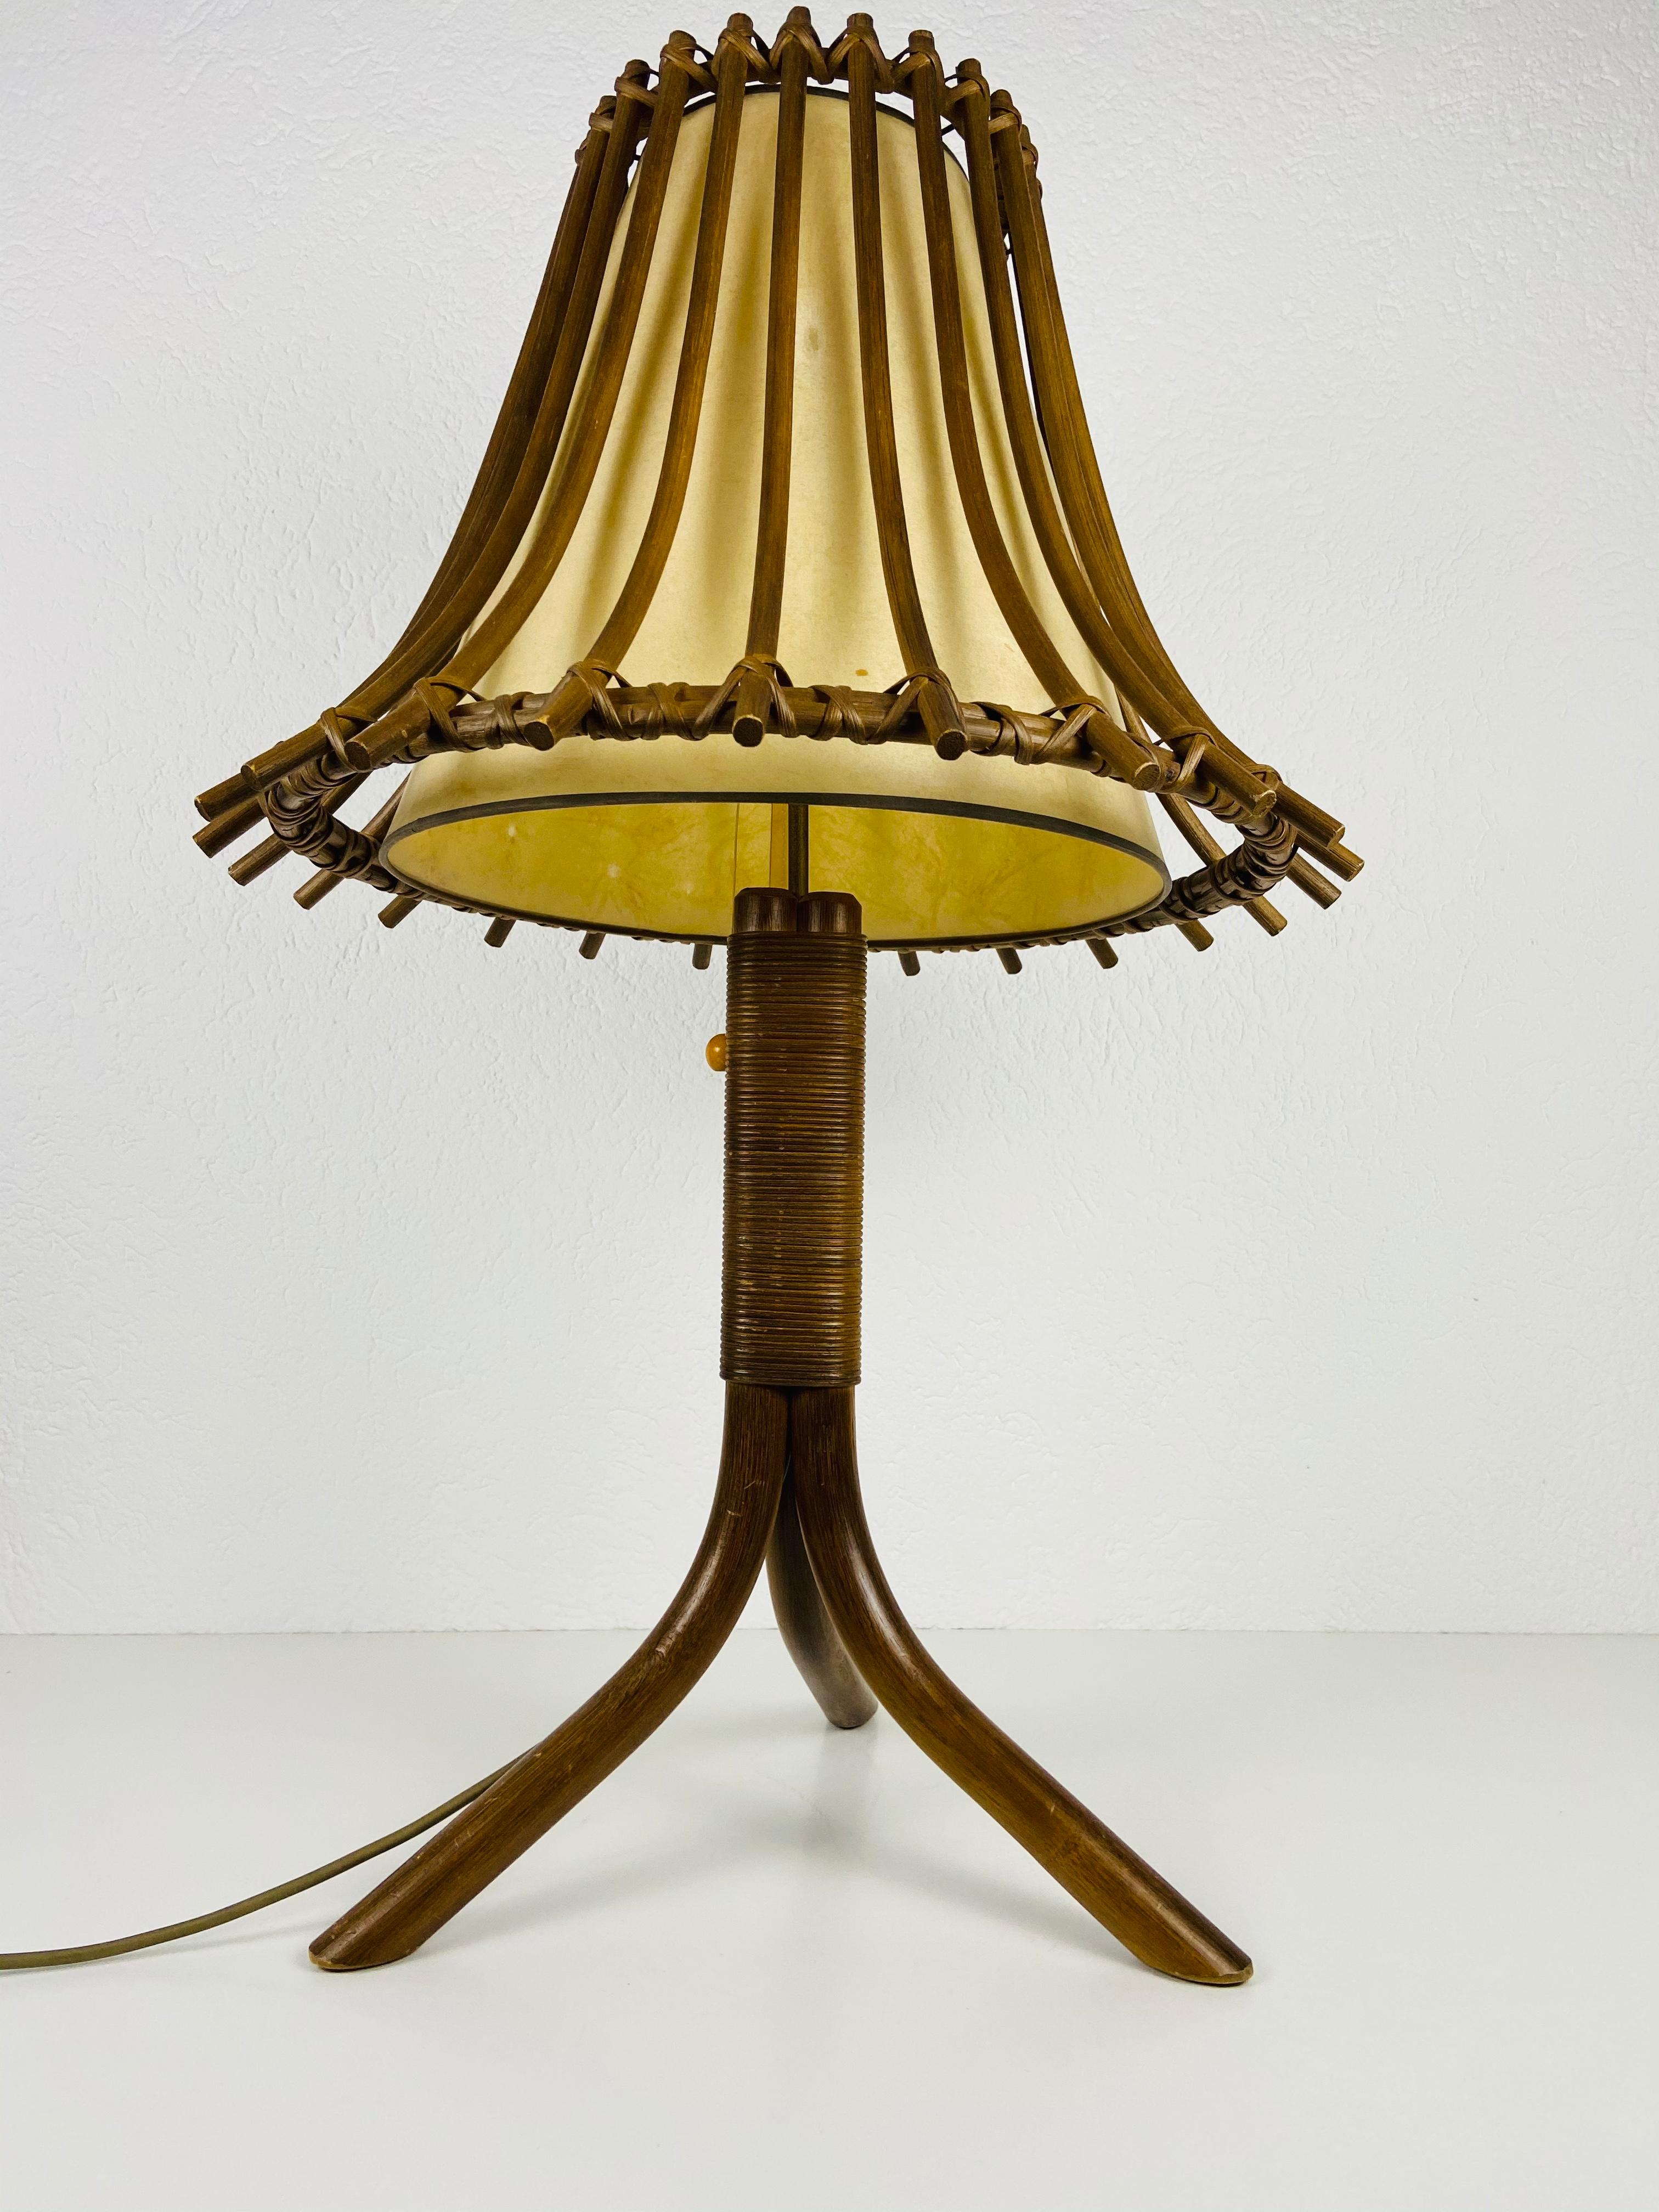 Une magnifique lampe de table en teck fabriquée dans les années 1960. Il est fascinant avec son abat-jour rare.

La lampe nécessite deux ampoules E27 (US E26). Très bon état vintage.

Expédition express gratuite dans le monde entier.